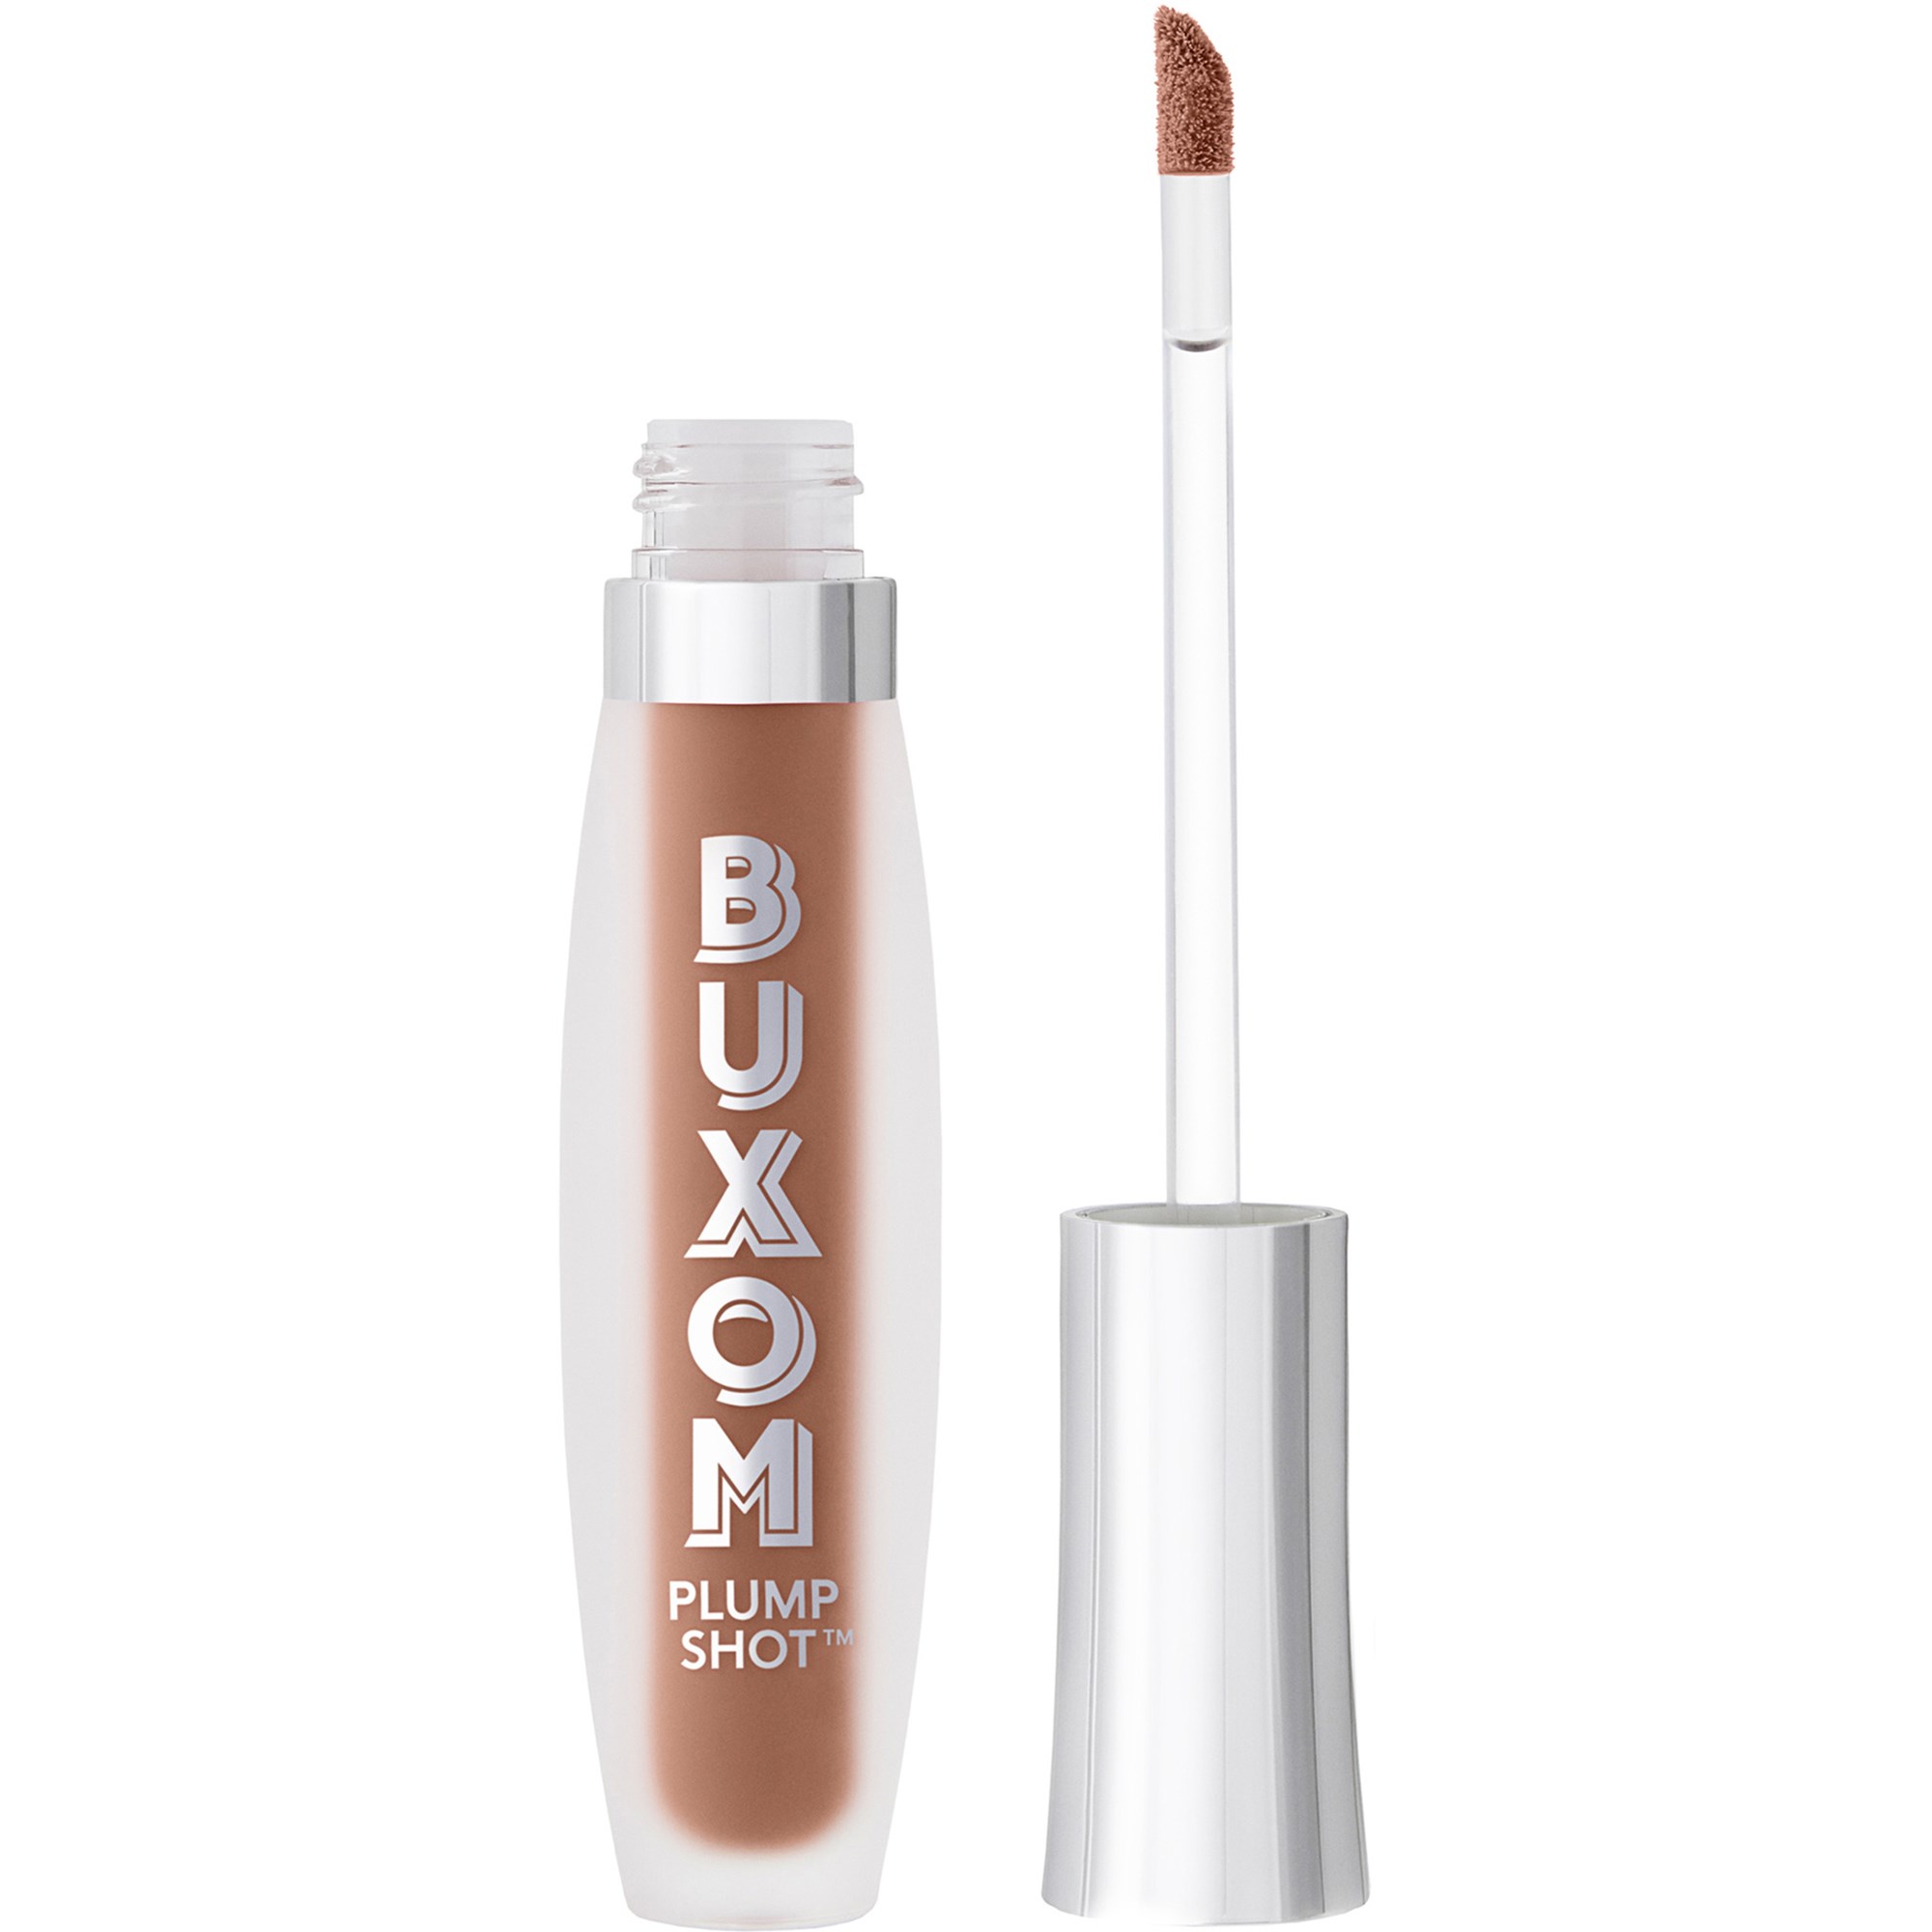 Bilde av Buxom Plump Shot™ Collagen-infused Lip Serum Get Naked